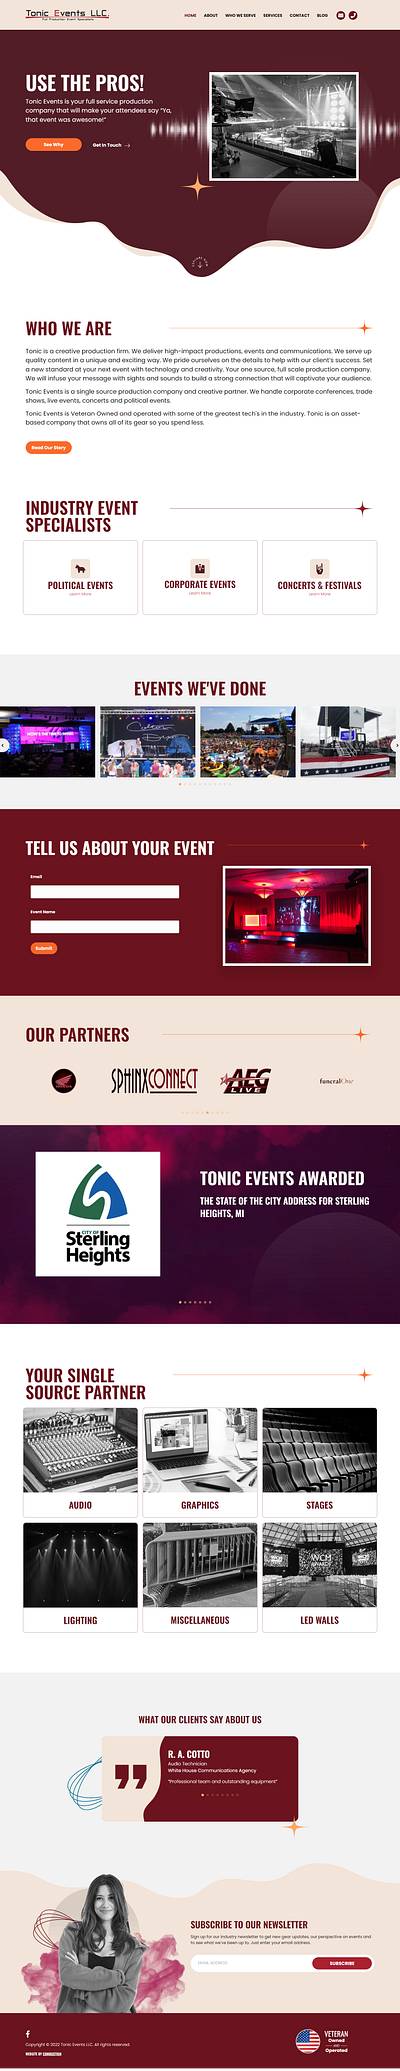 Tonic Events Website Redesign branding design ui